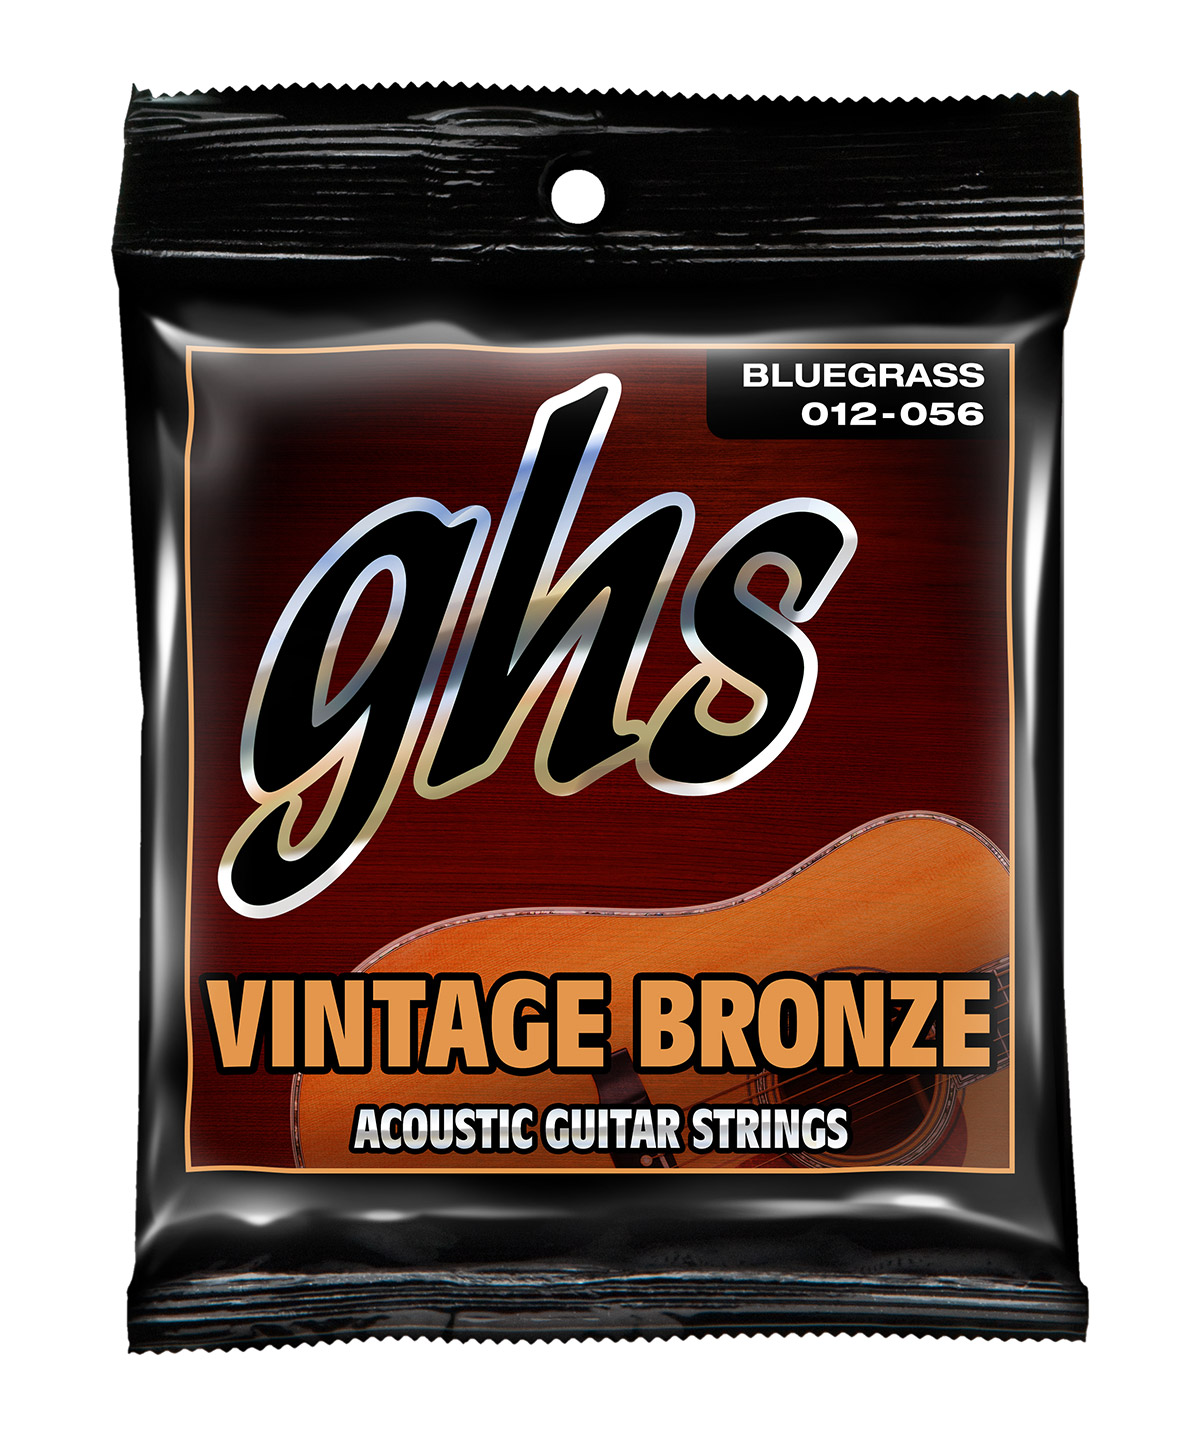 GHS Vintage Bronze - VN-B - Acoustic Guitar String Set, Bluegrass, .012-.056